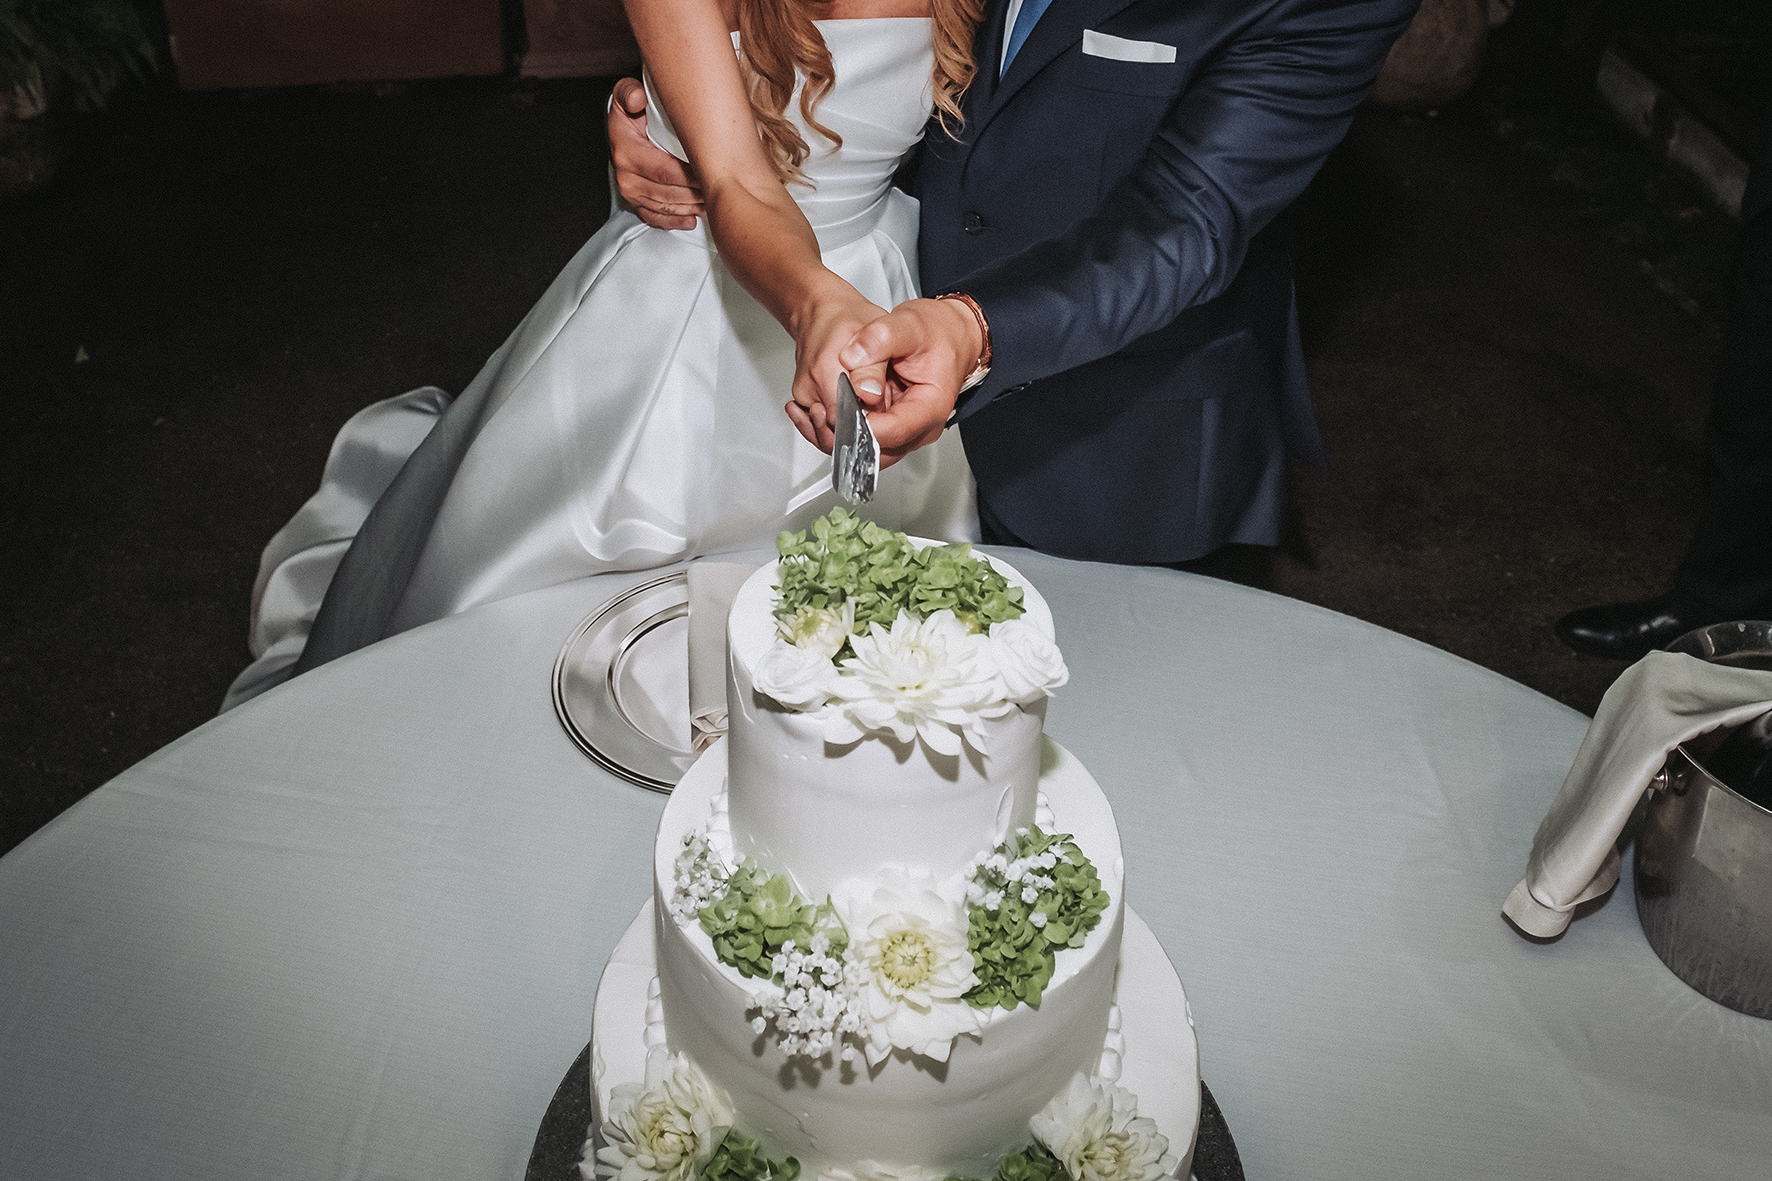 taglio della torta verde e bianca foto matrimonio napoli